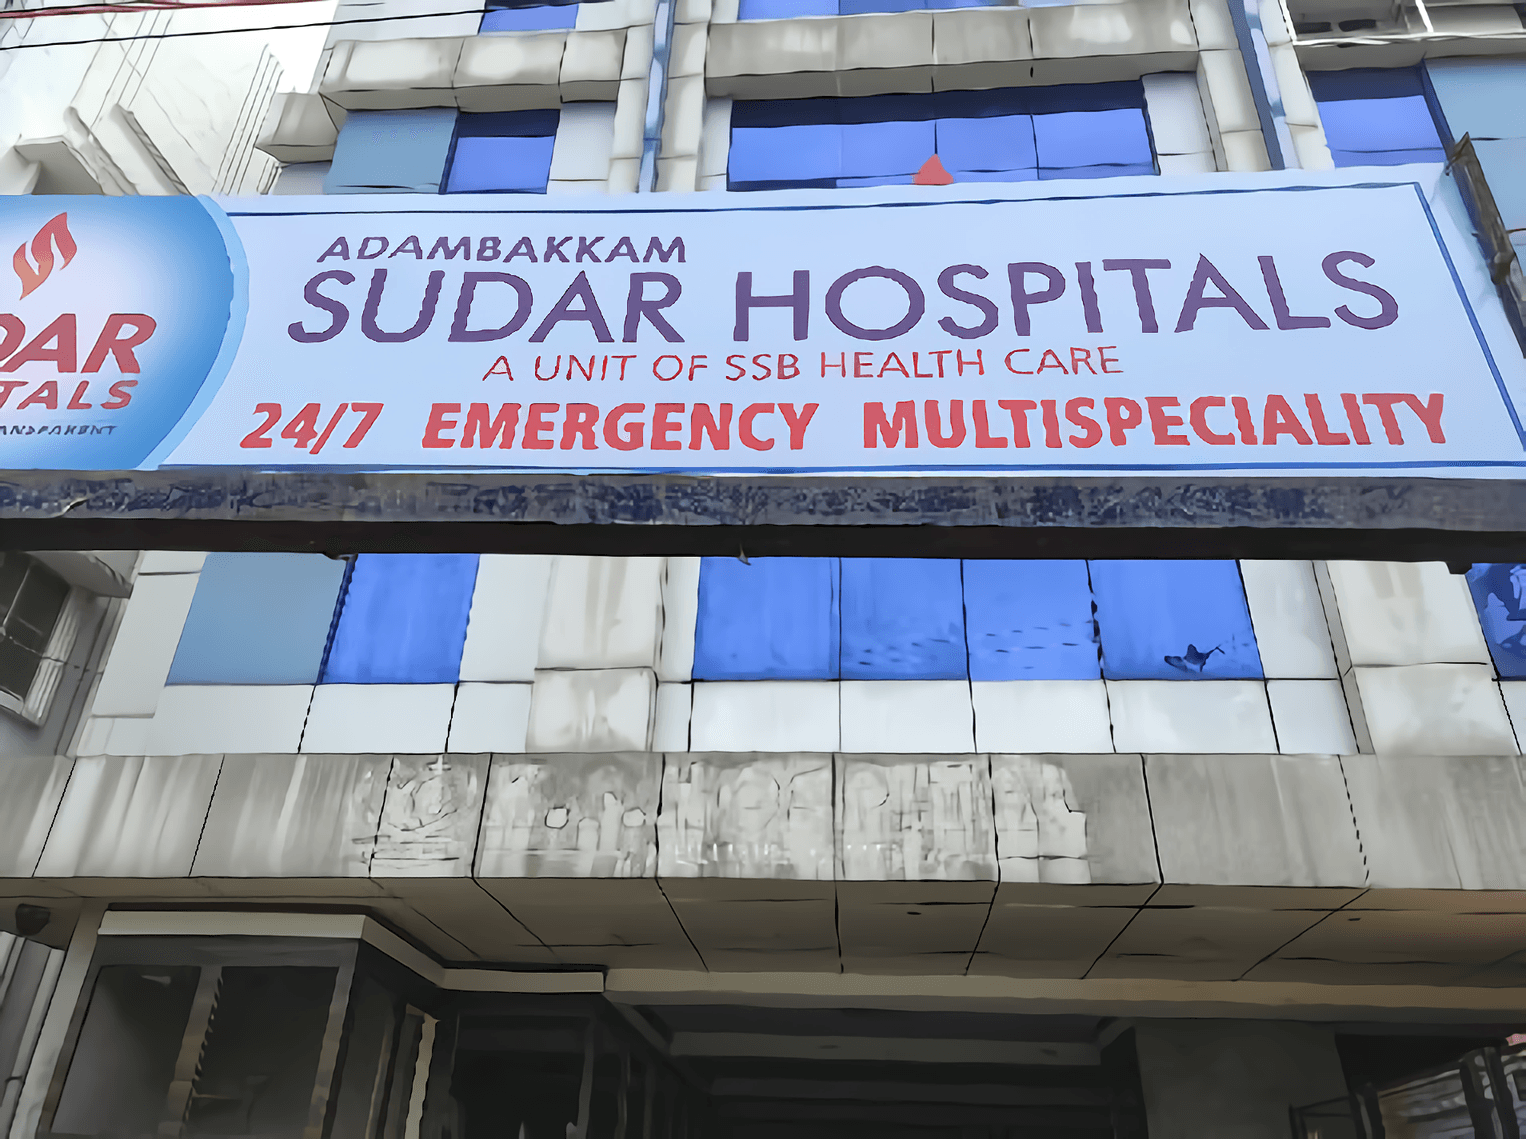 Adambakkam Sudar Hospitals